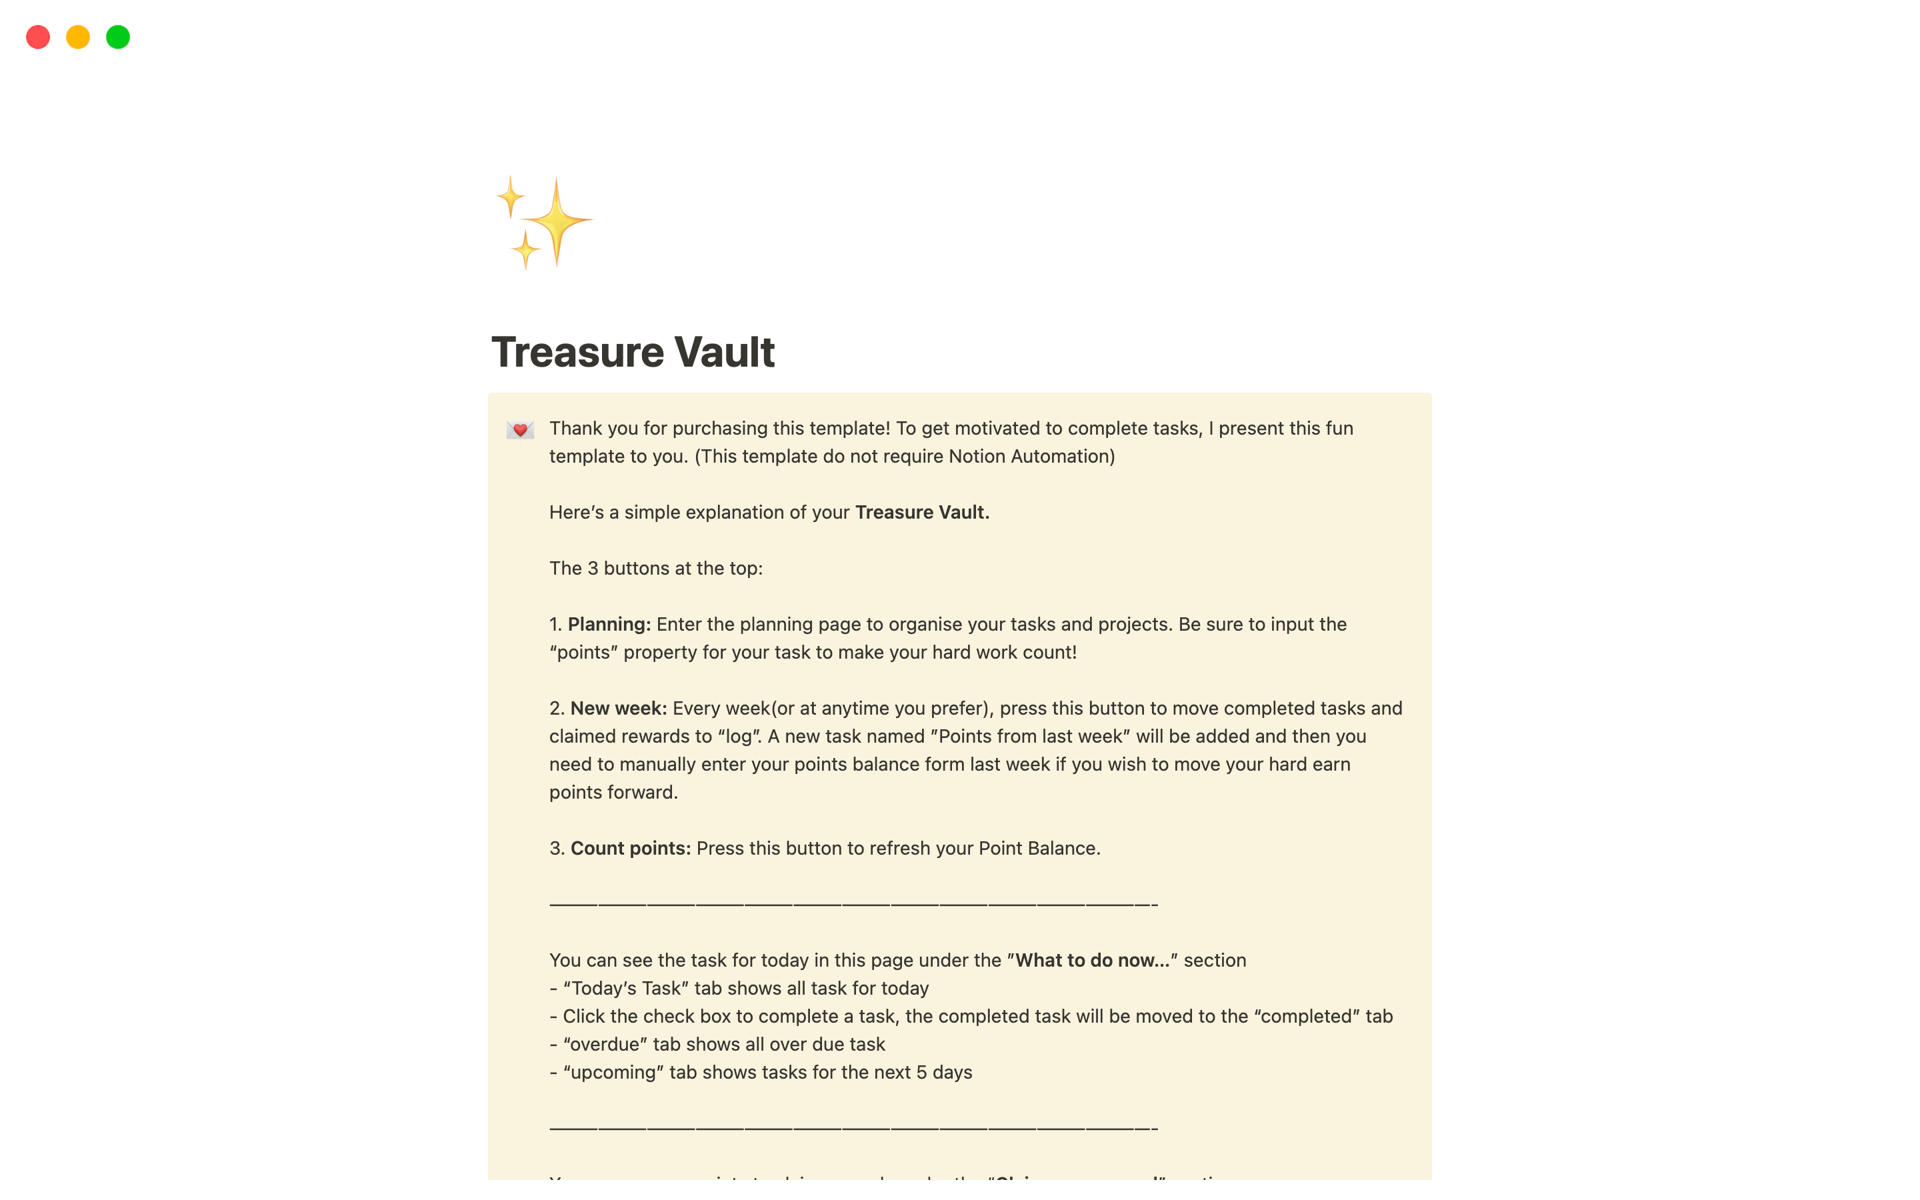 Uma prévia do modelo para Treasure Vault